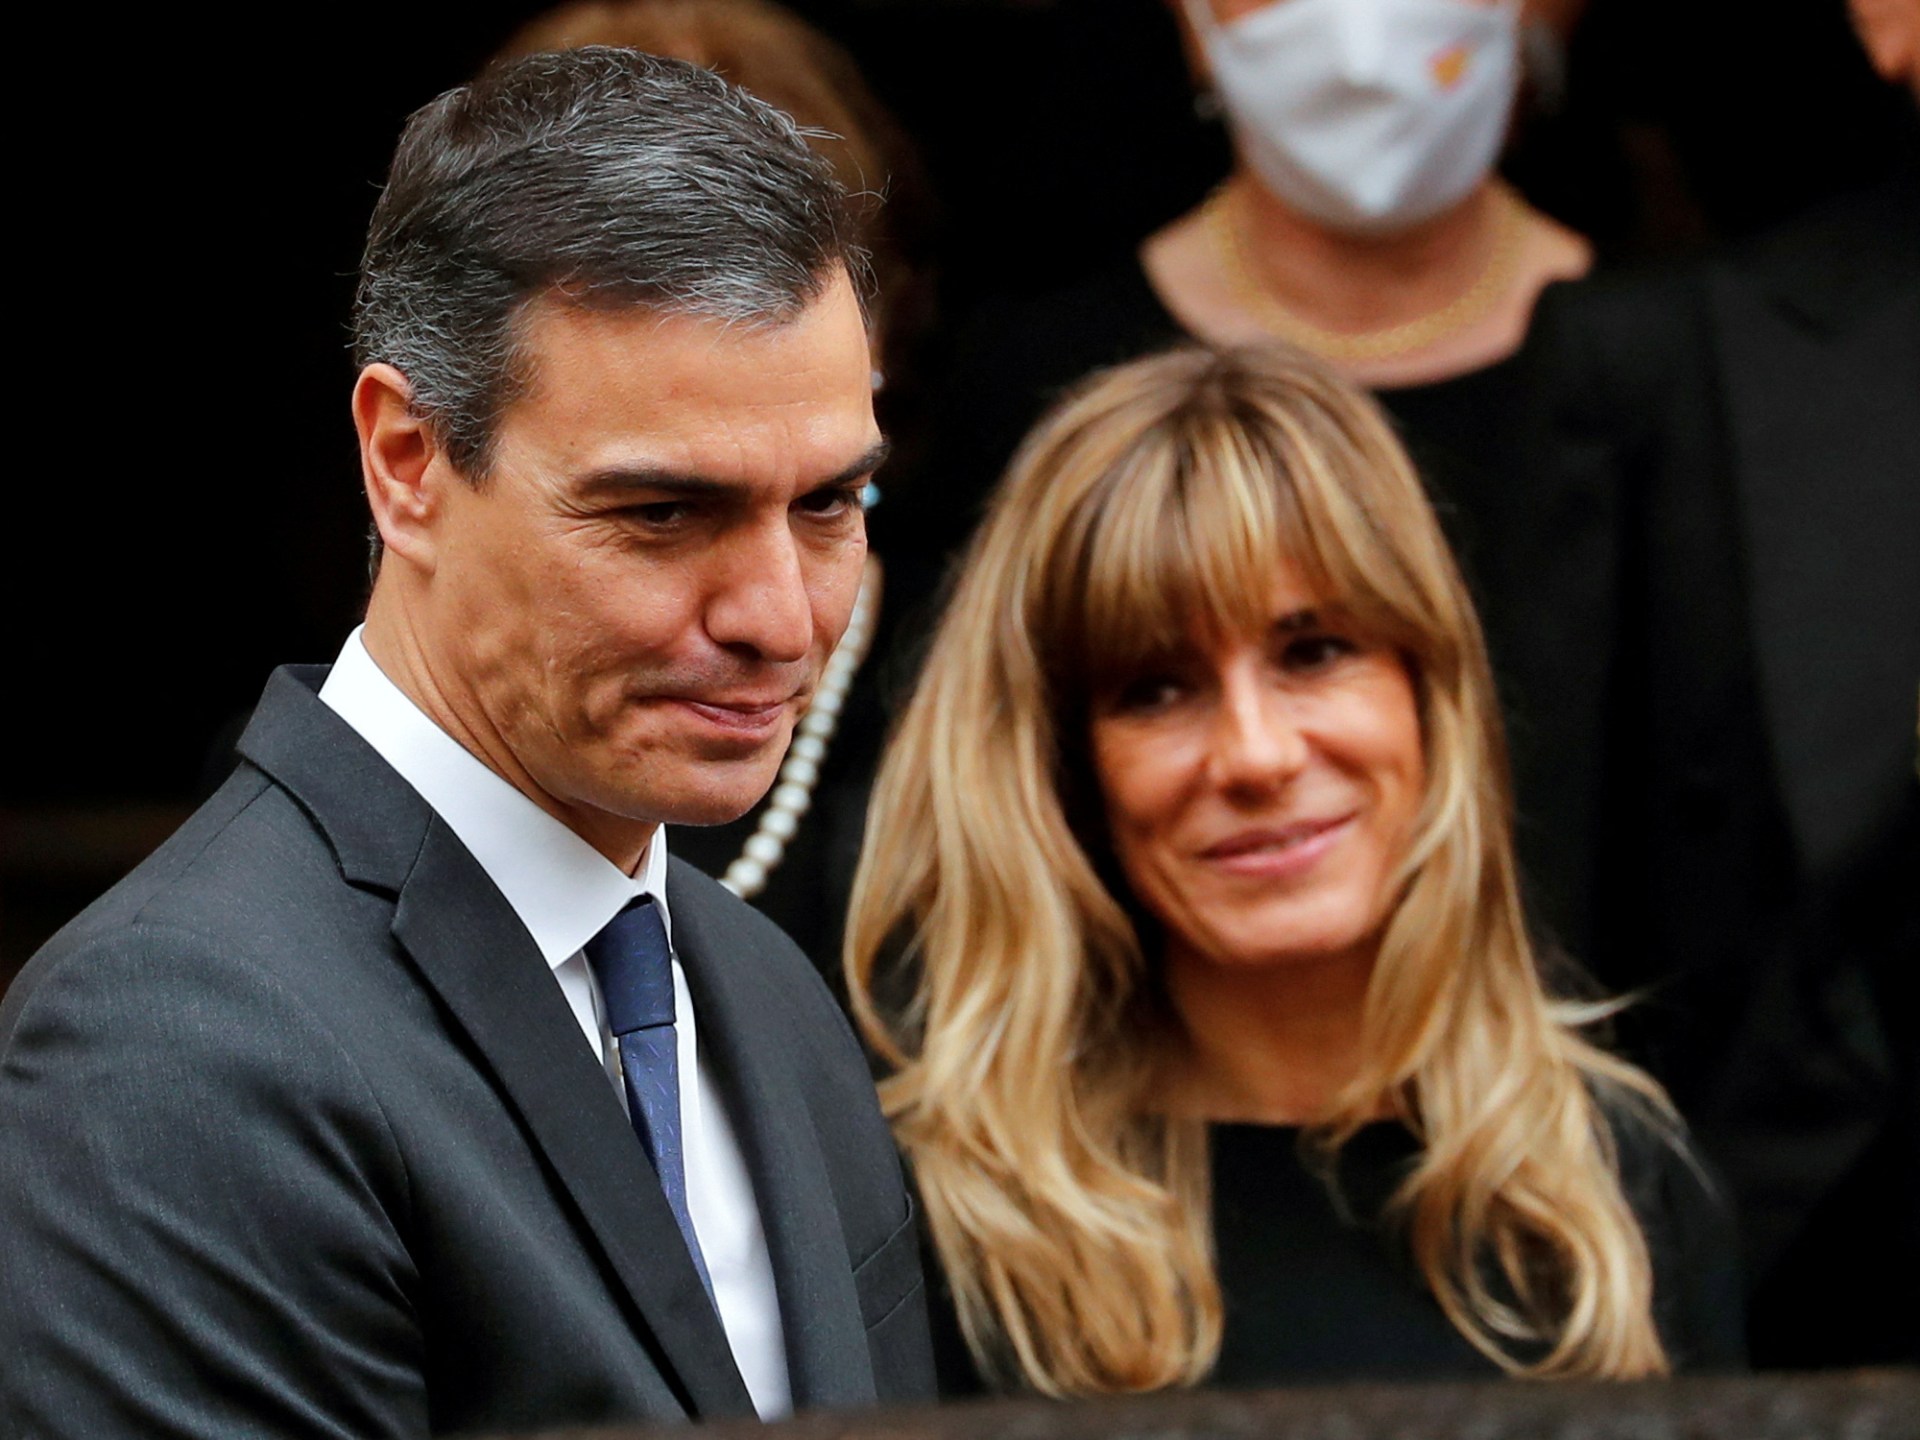 Le Premier ministre espagnol suspend ses fonctions publiques après que son épouse soit accusée de corruption |  Nouvelles